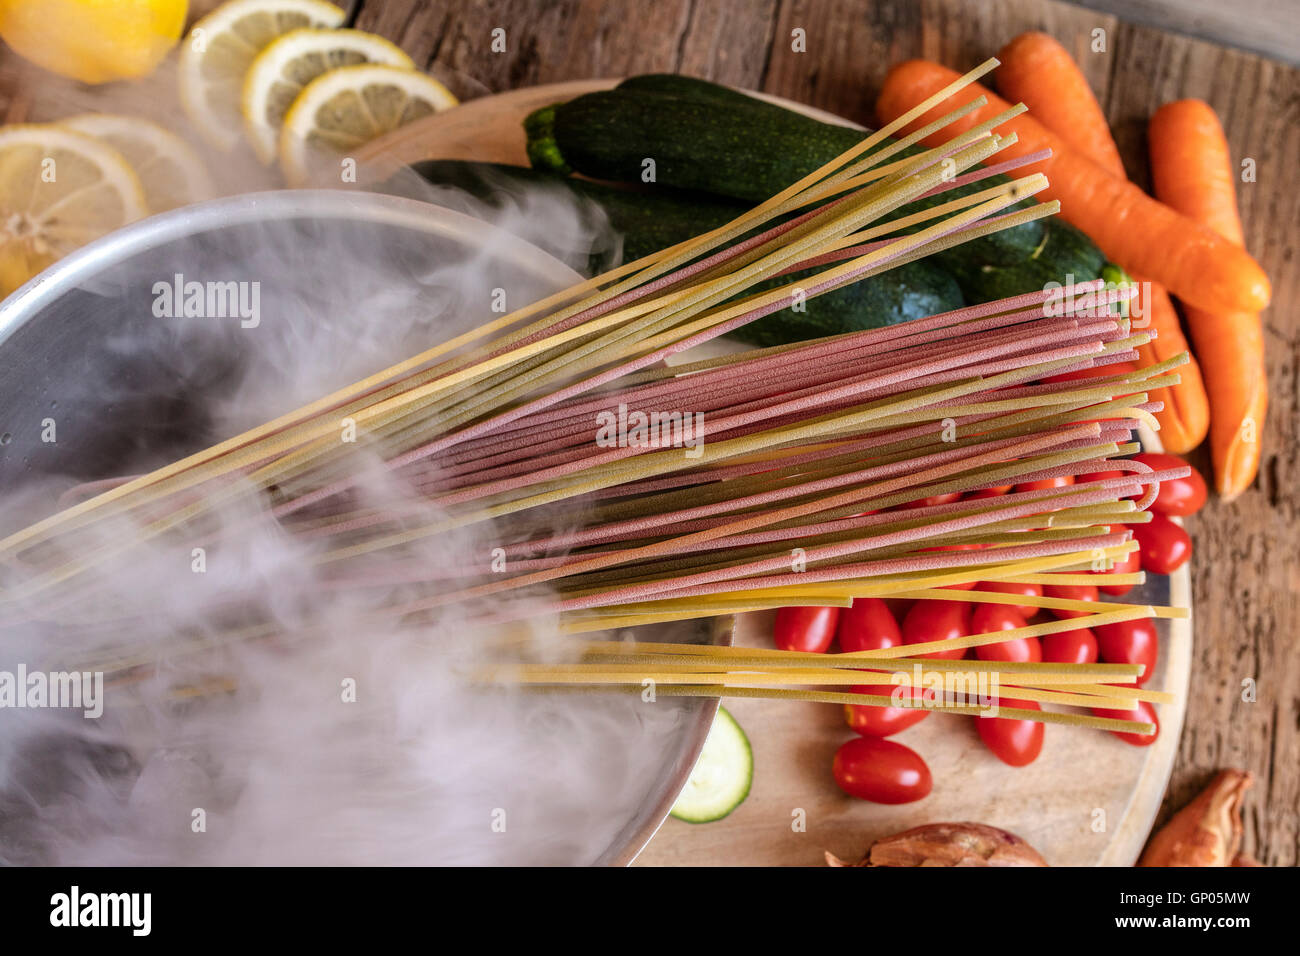 Italiano spaghetti colorati e verdure fresche come ingredienti tipici della sana cucina italiana Foto Stock